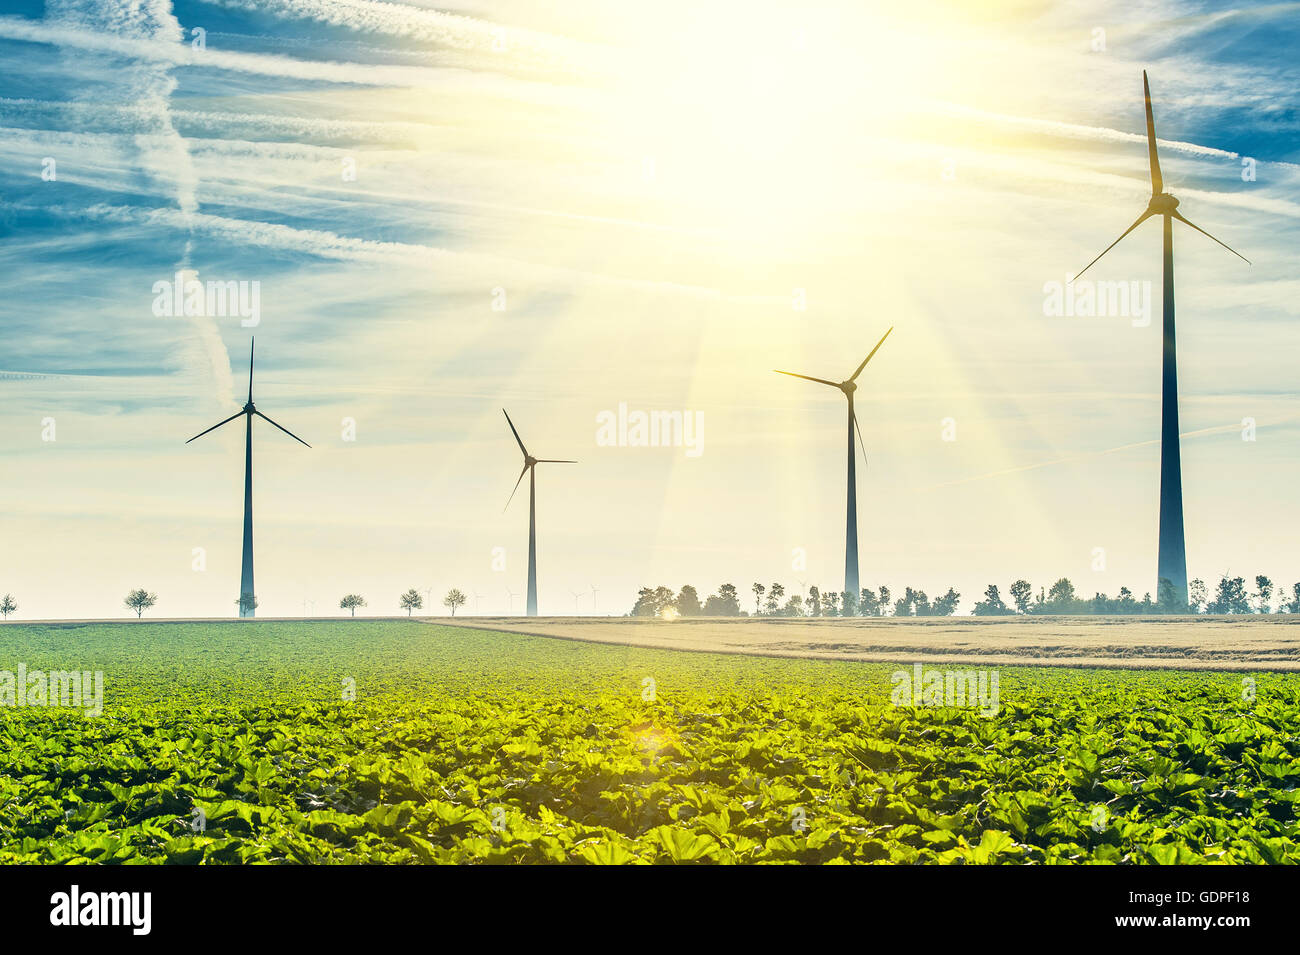 Wind Turbines - renewable energy sources Stock Photo